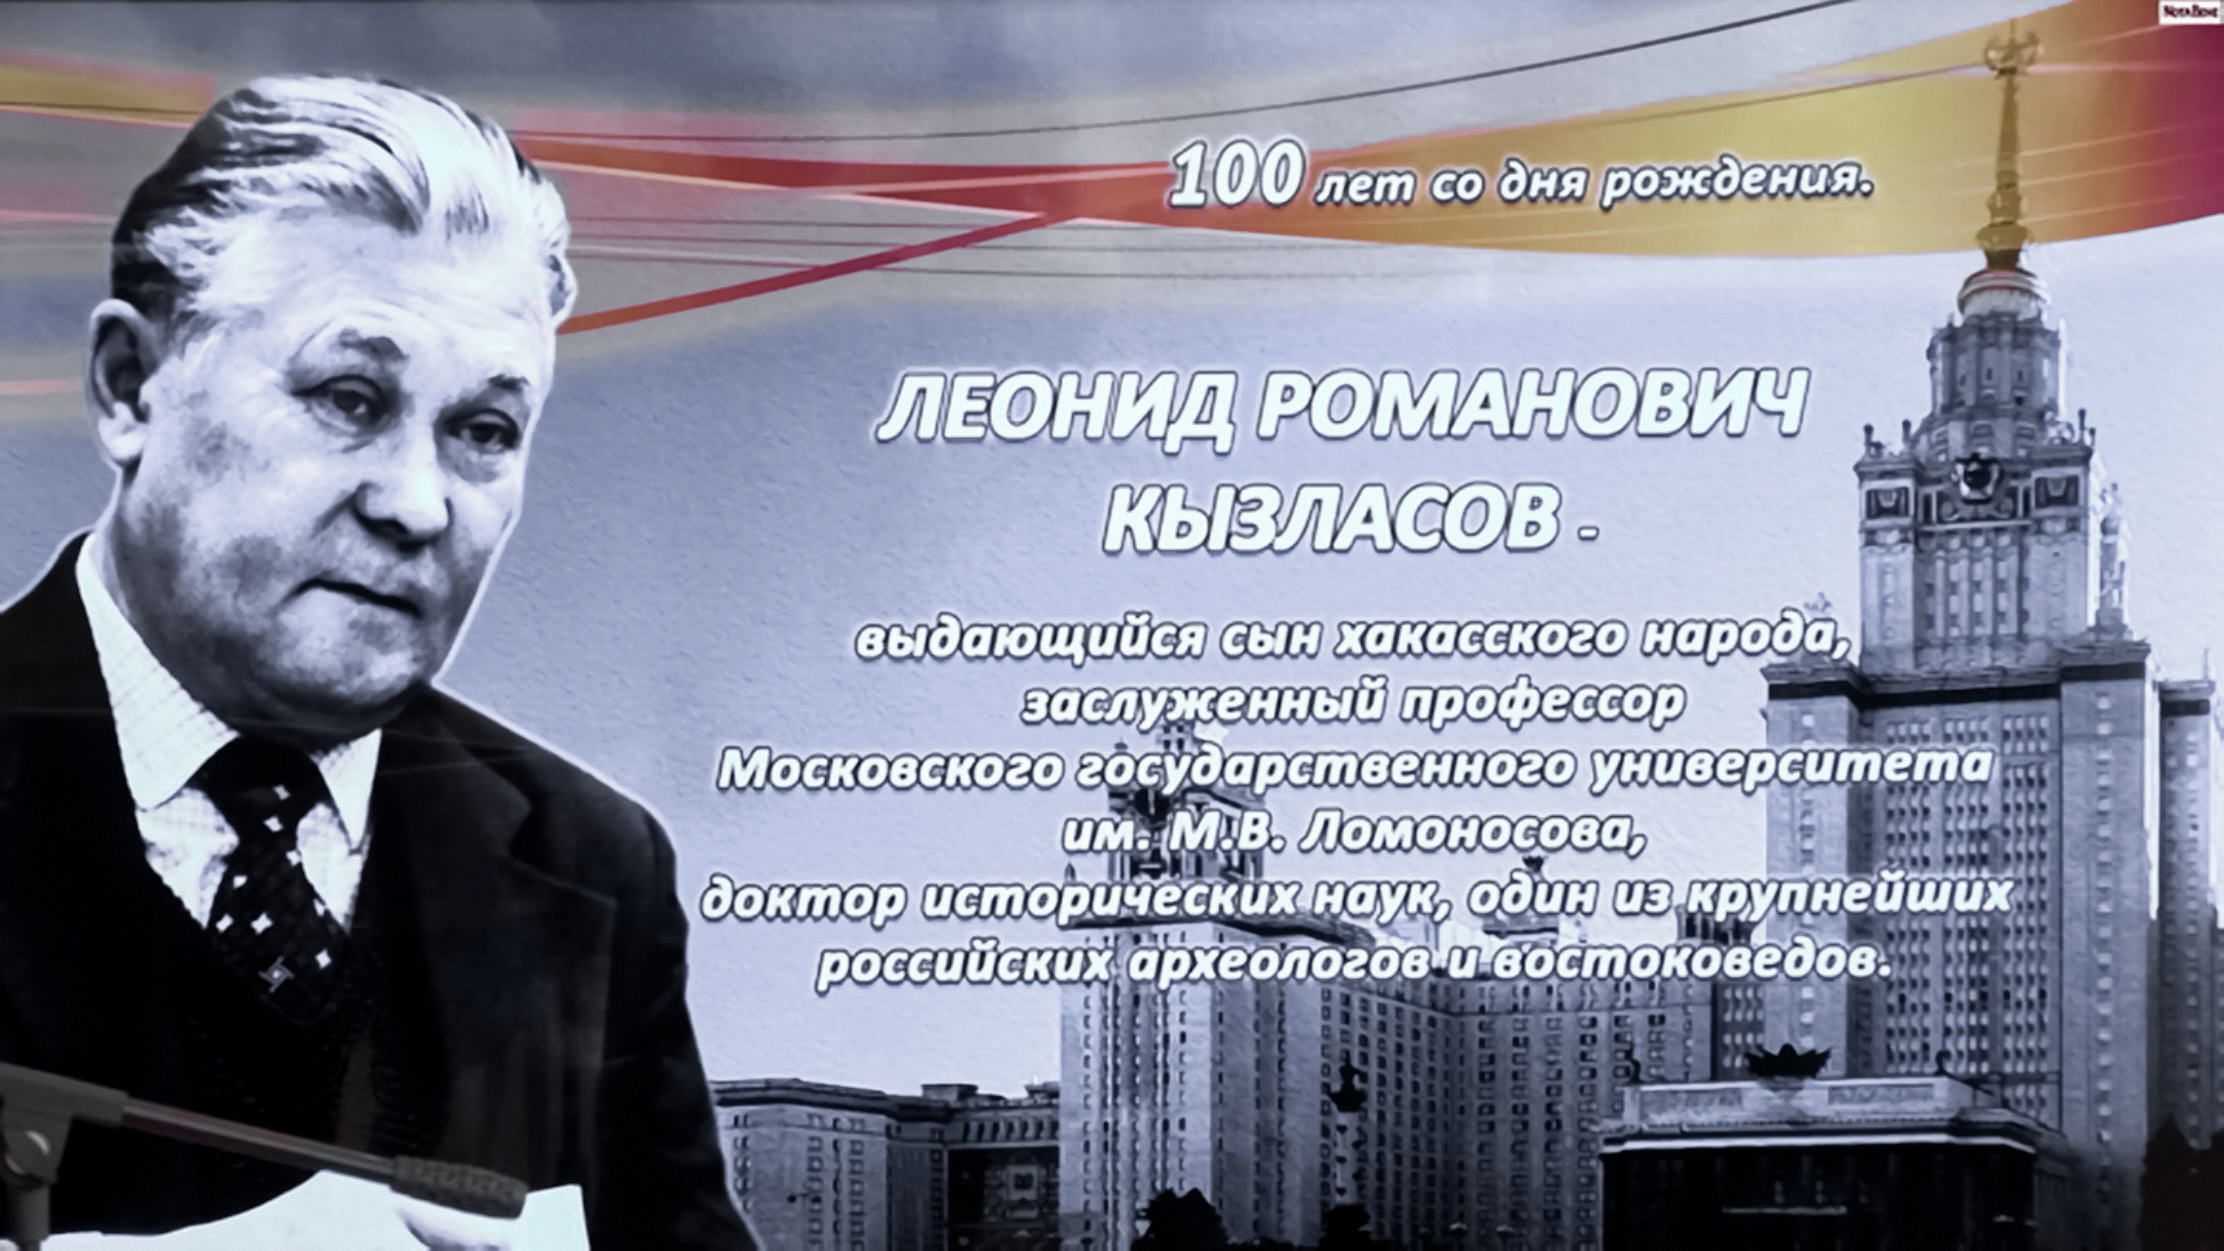 А.Р. Канторович принял участие в мероприятиях, посвященных 100-летию со дня рождения Л.Р. Кызласова